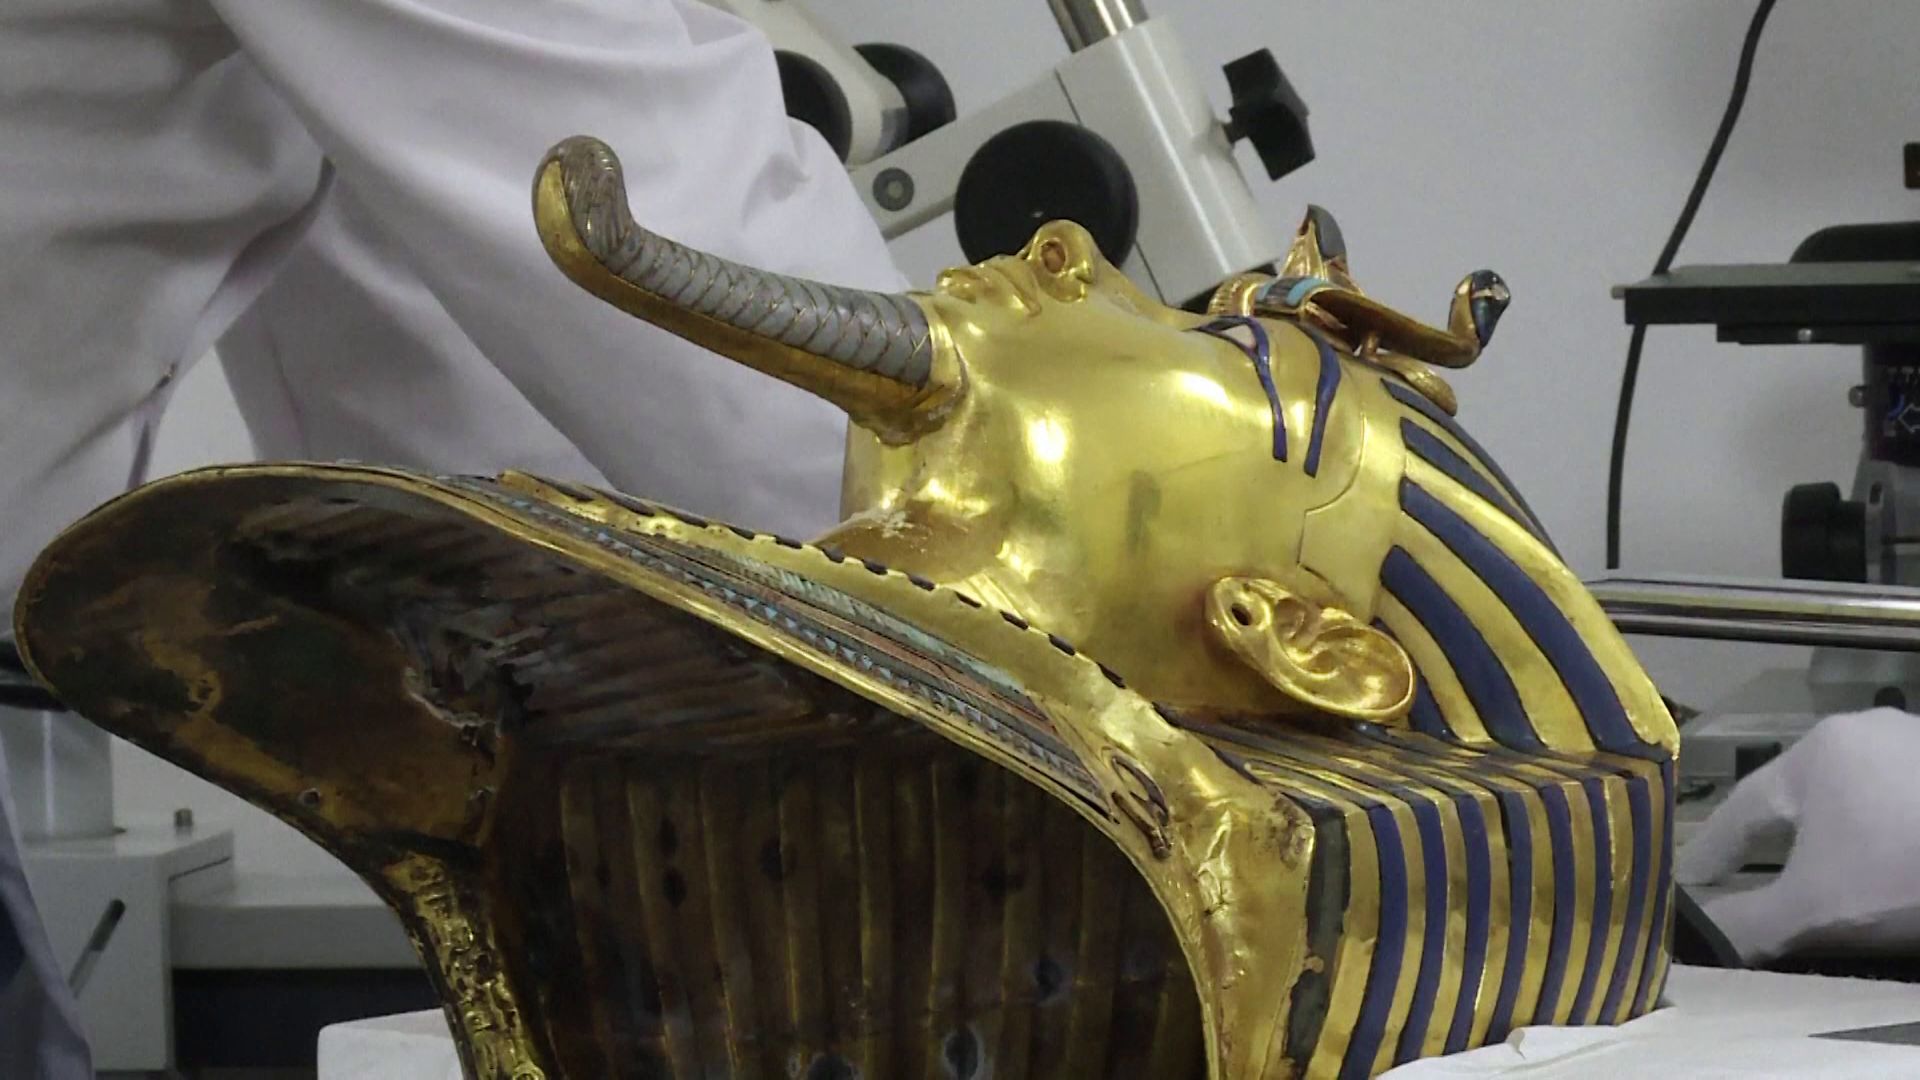 
Le masque en or restauré du pharaon Toutankhamon